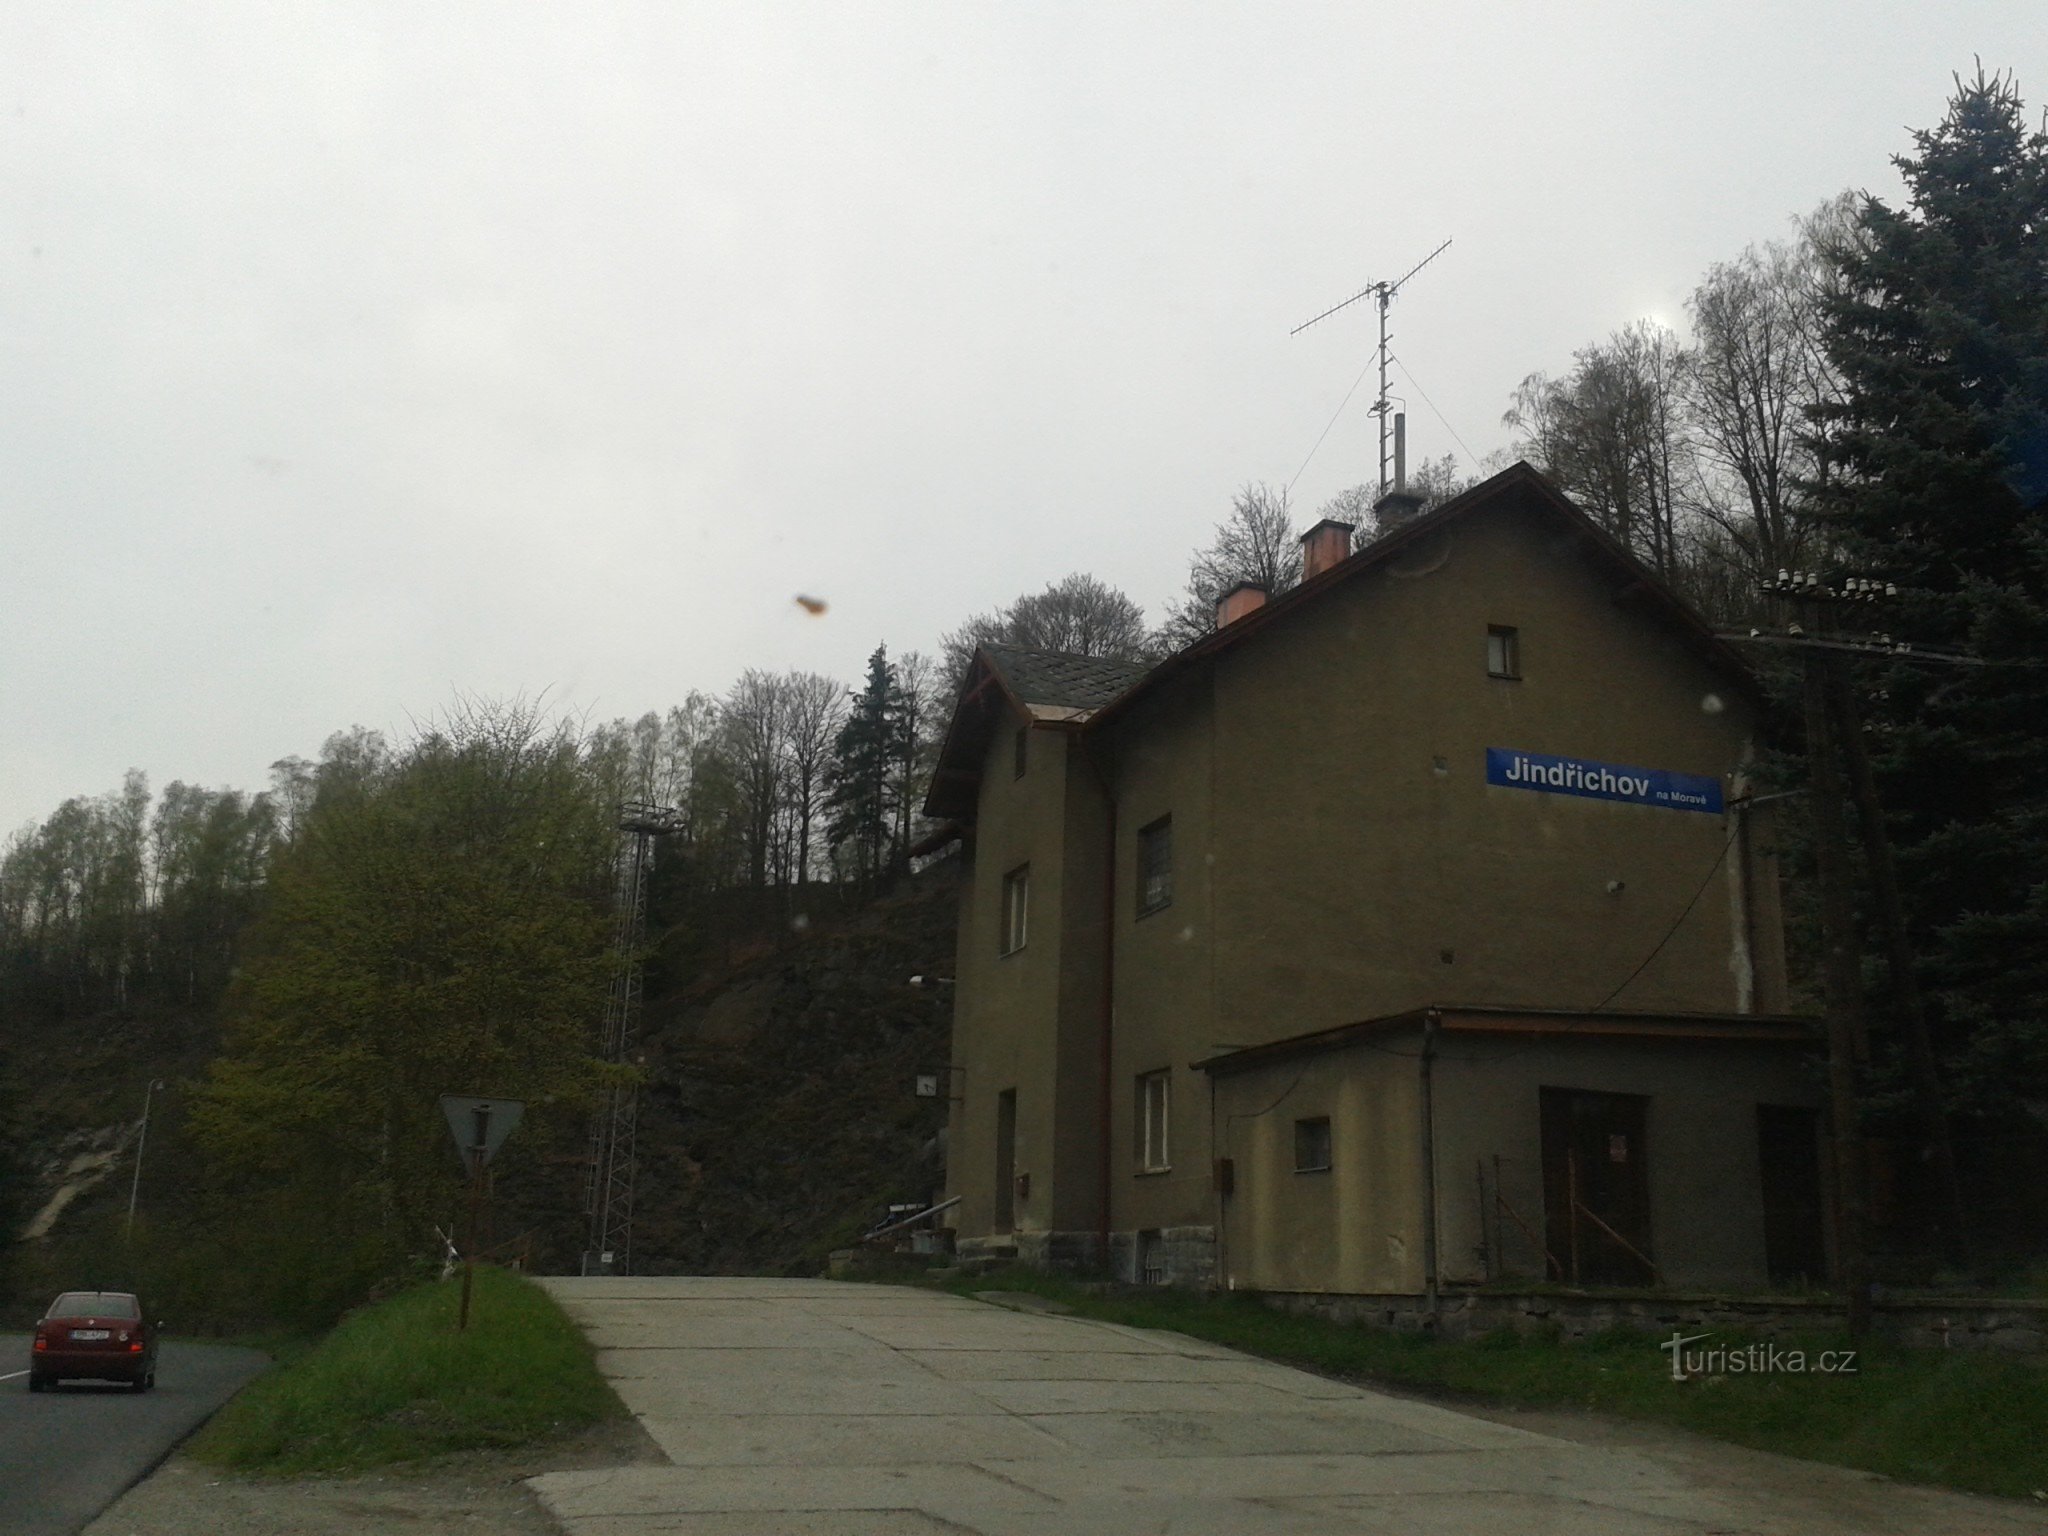 Jindřichov na Moravskem - nekdanja papirnica in železniška postaja, kjer se je čas ustavil, okrožje Šumperk